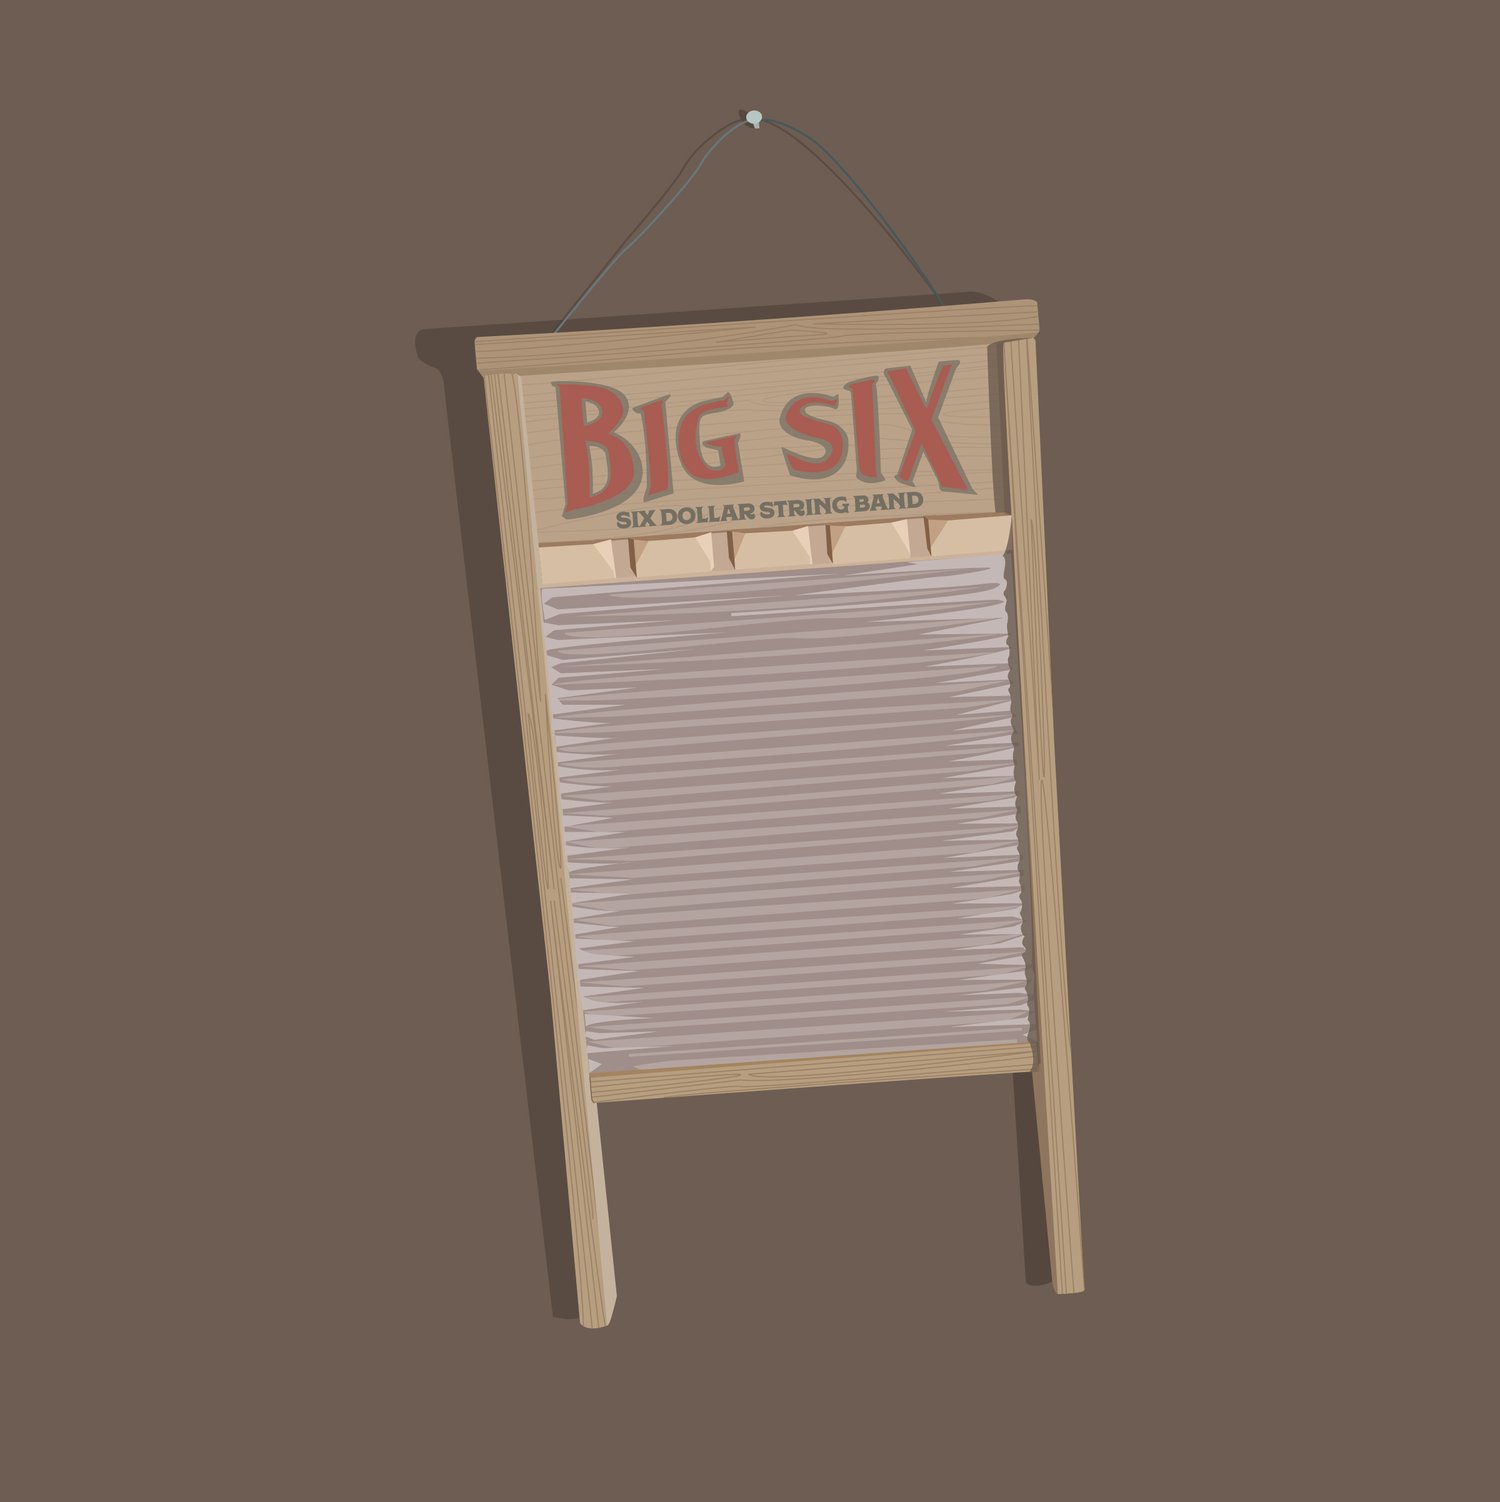 "Big Six" by Six Dollar String Band